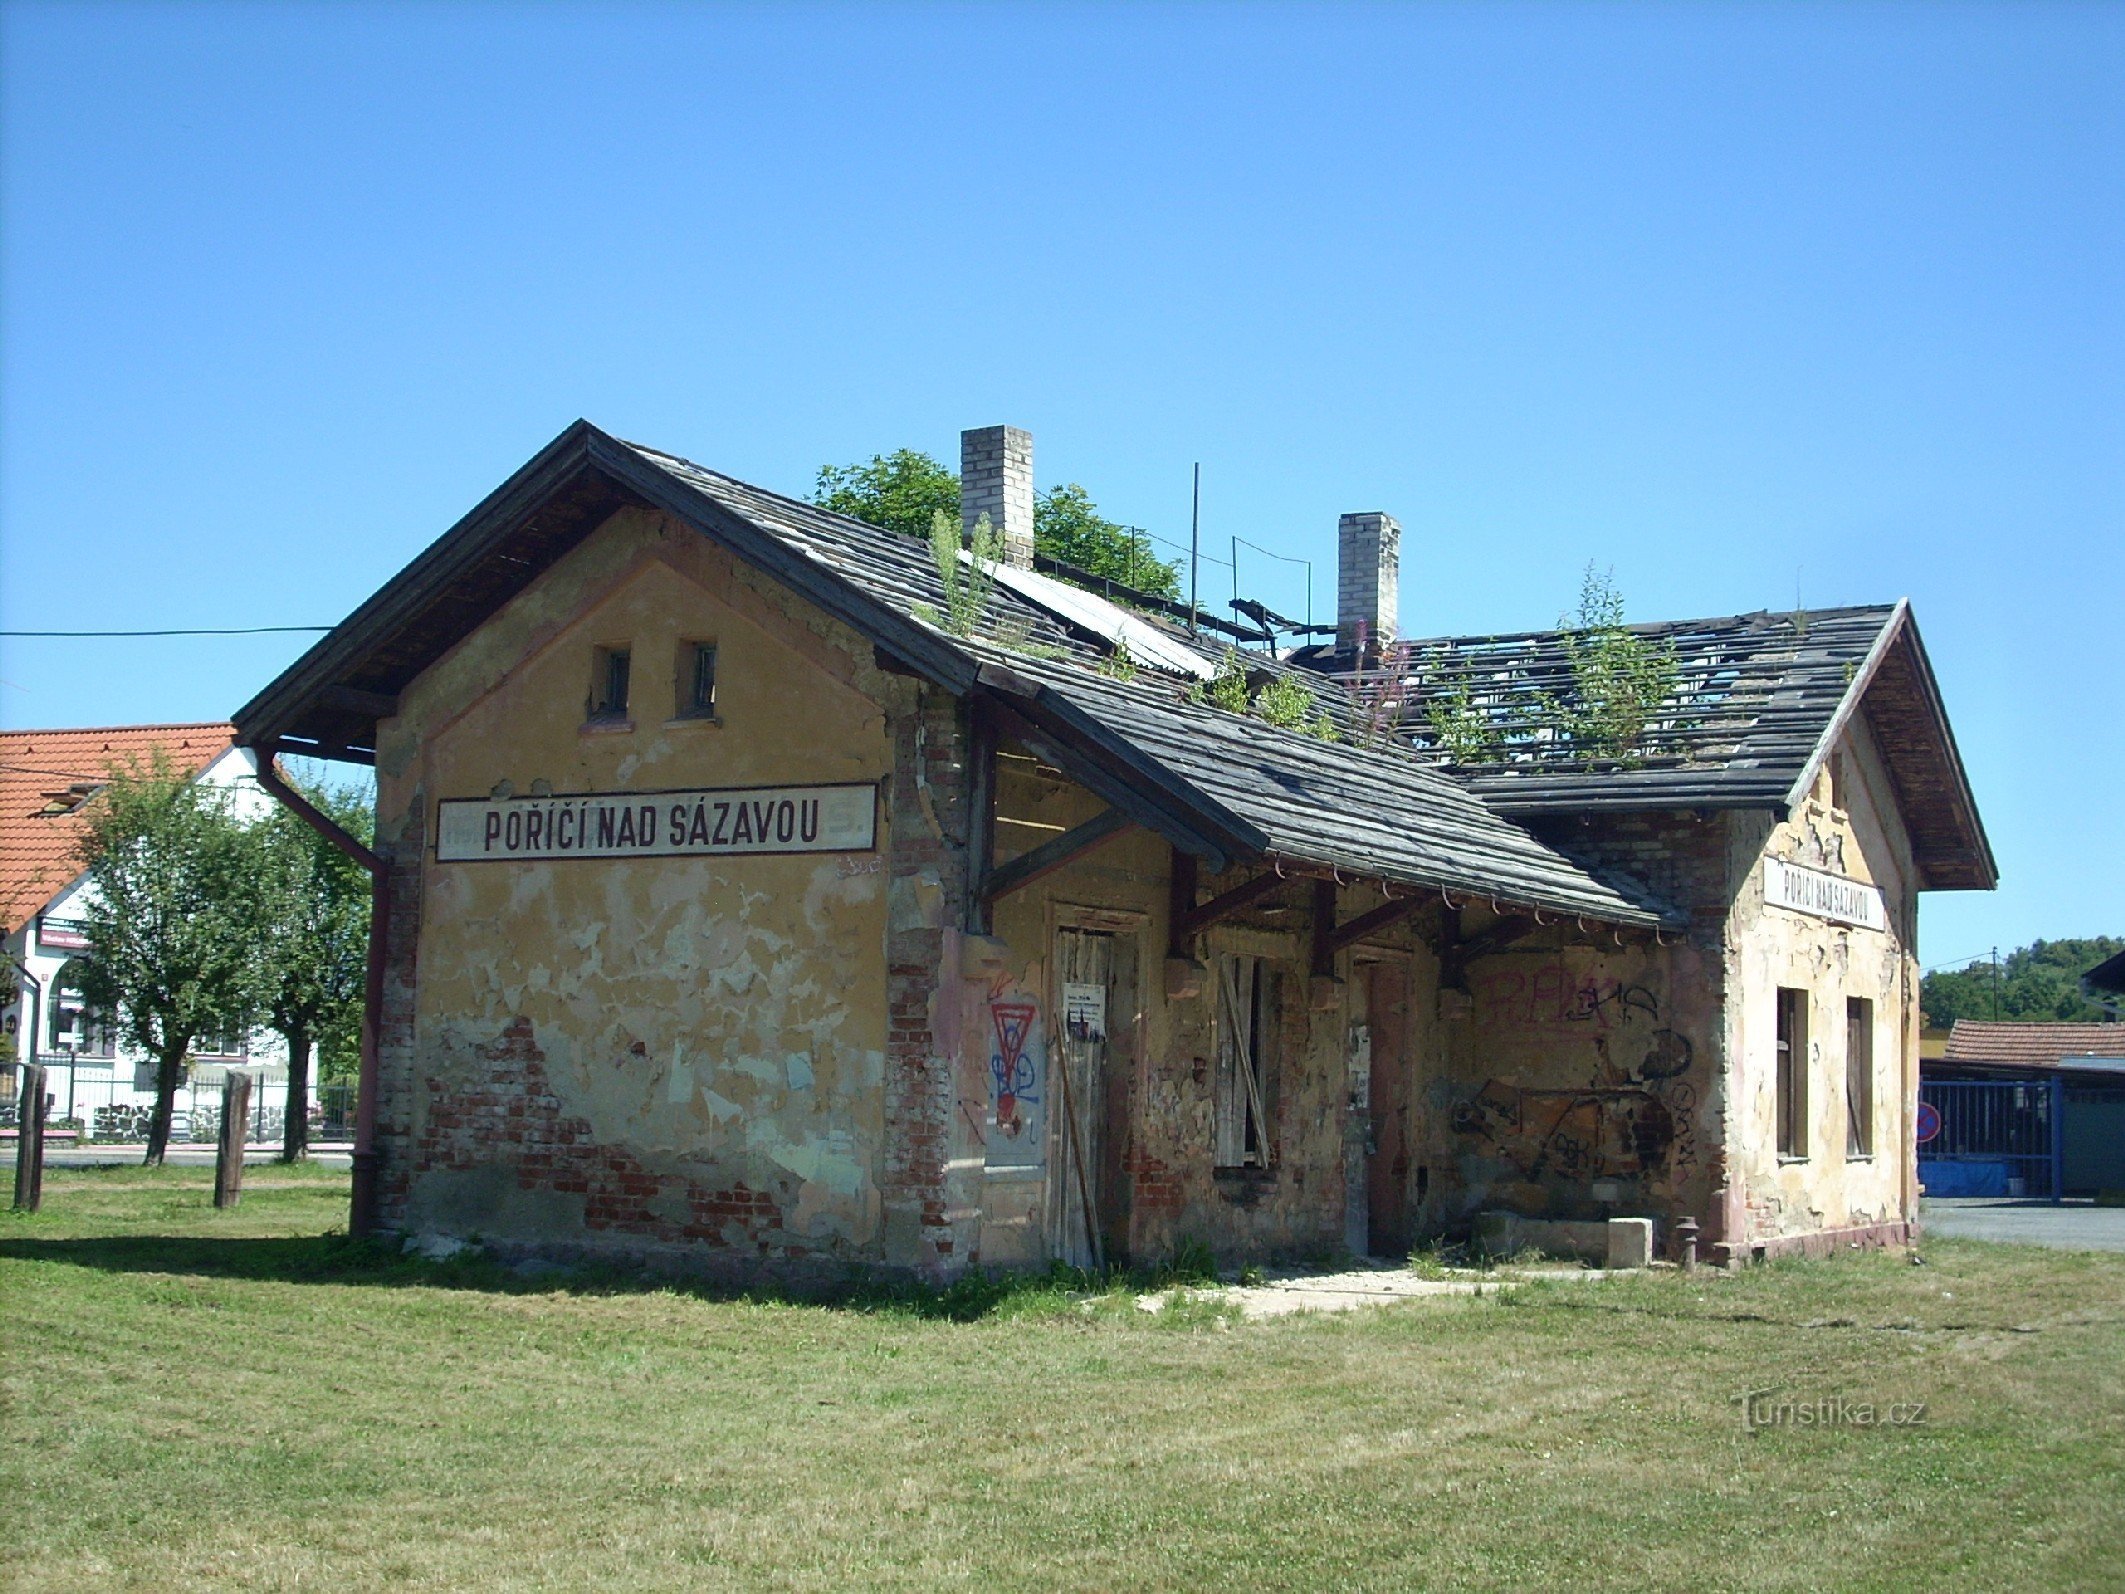 2. La estación de tren en Poříčí nad Sázavou - la foto muestra cómo la pequeña estación de tren está desapareciendo gradualmente